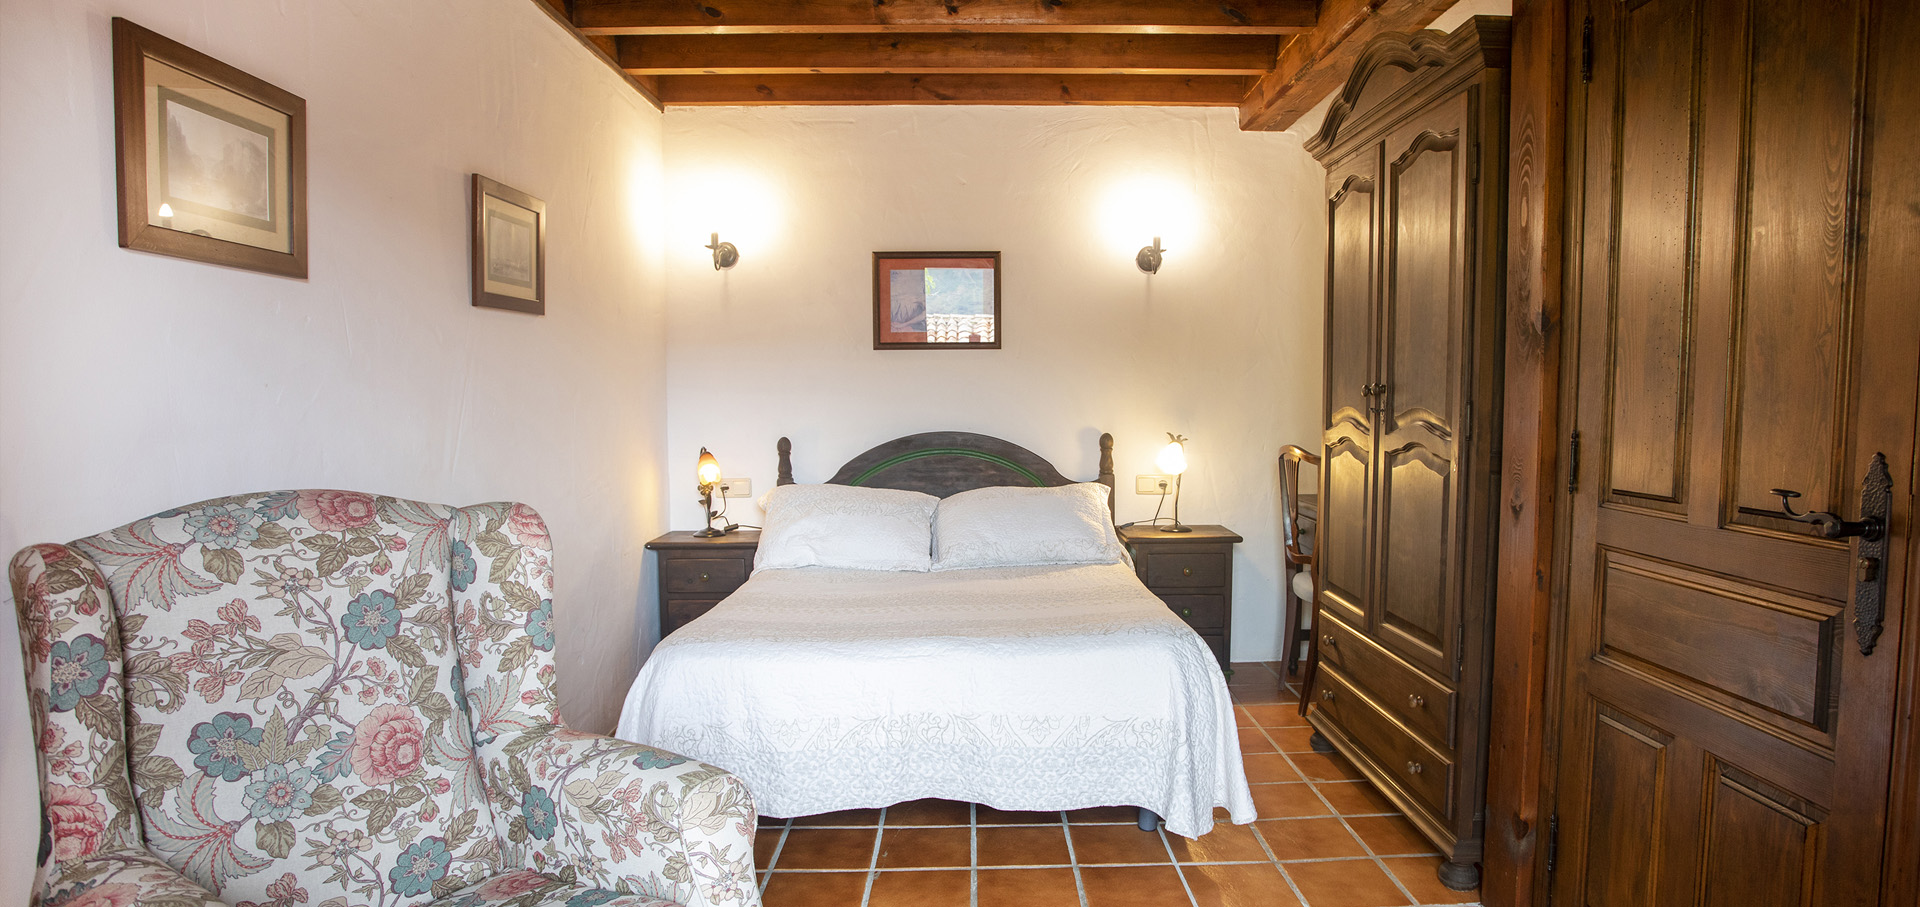 hotel rural asturias encanto habitacion doble estandar llavandera cab